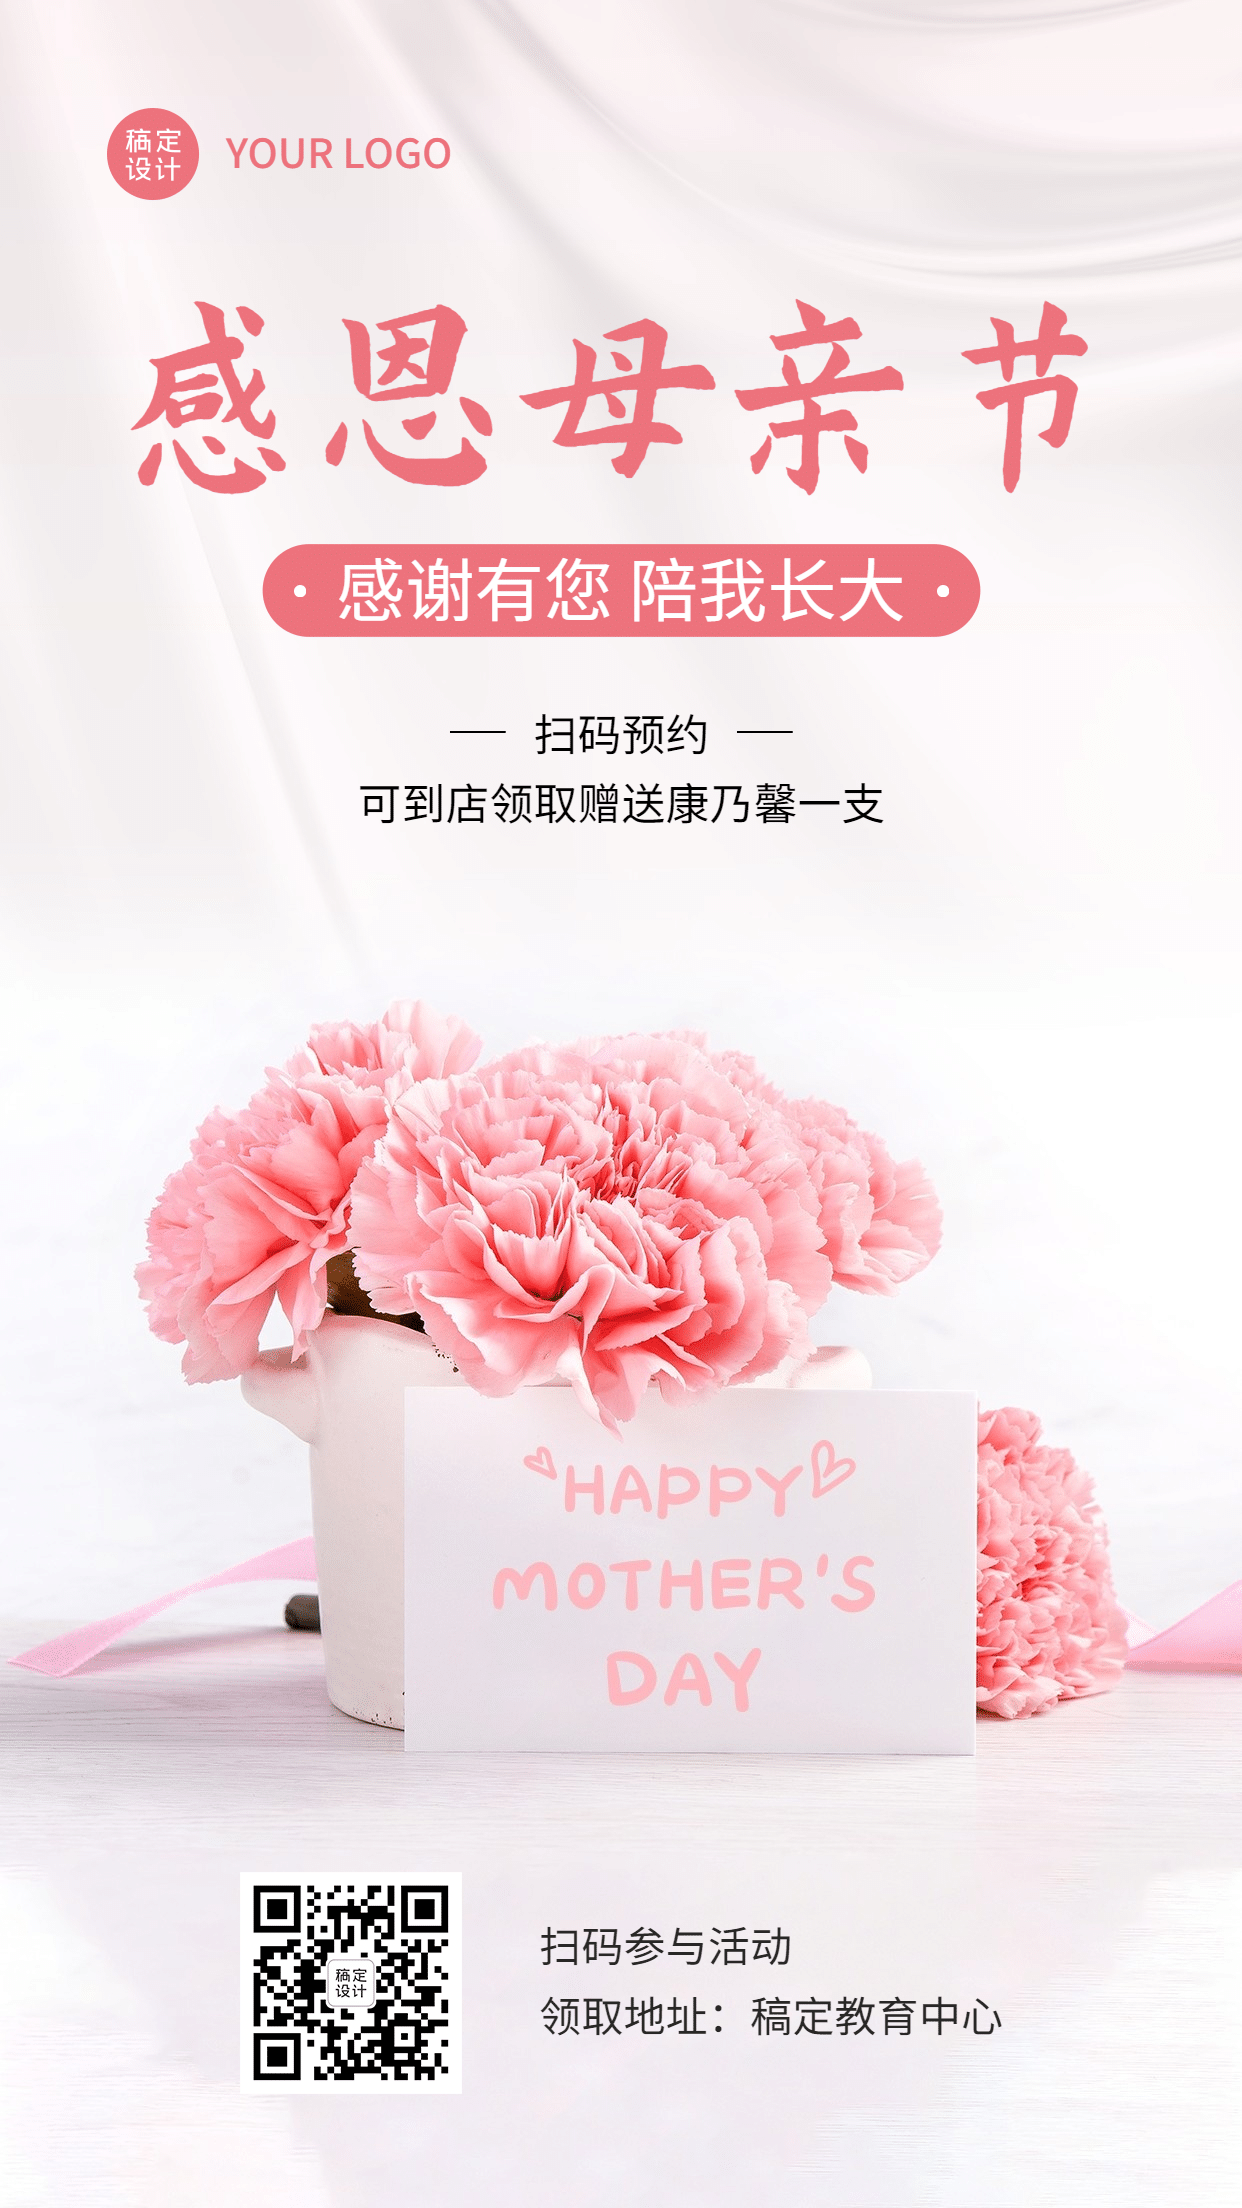 母亲节送花活动宣传海报预览效果